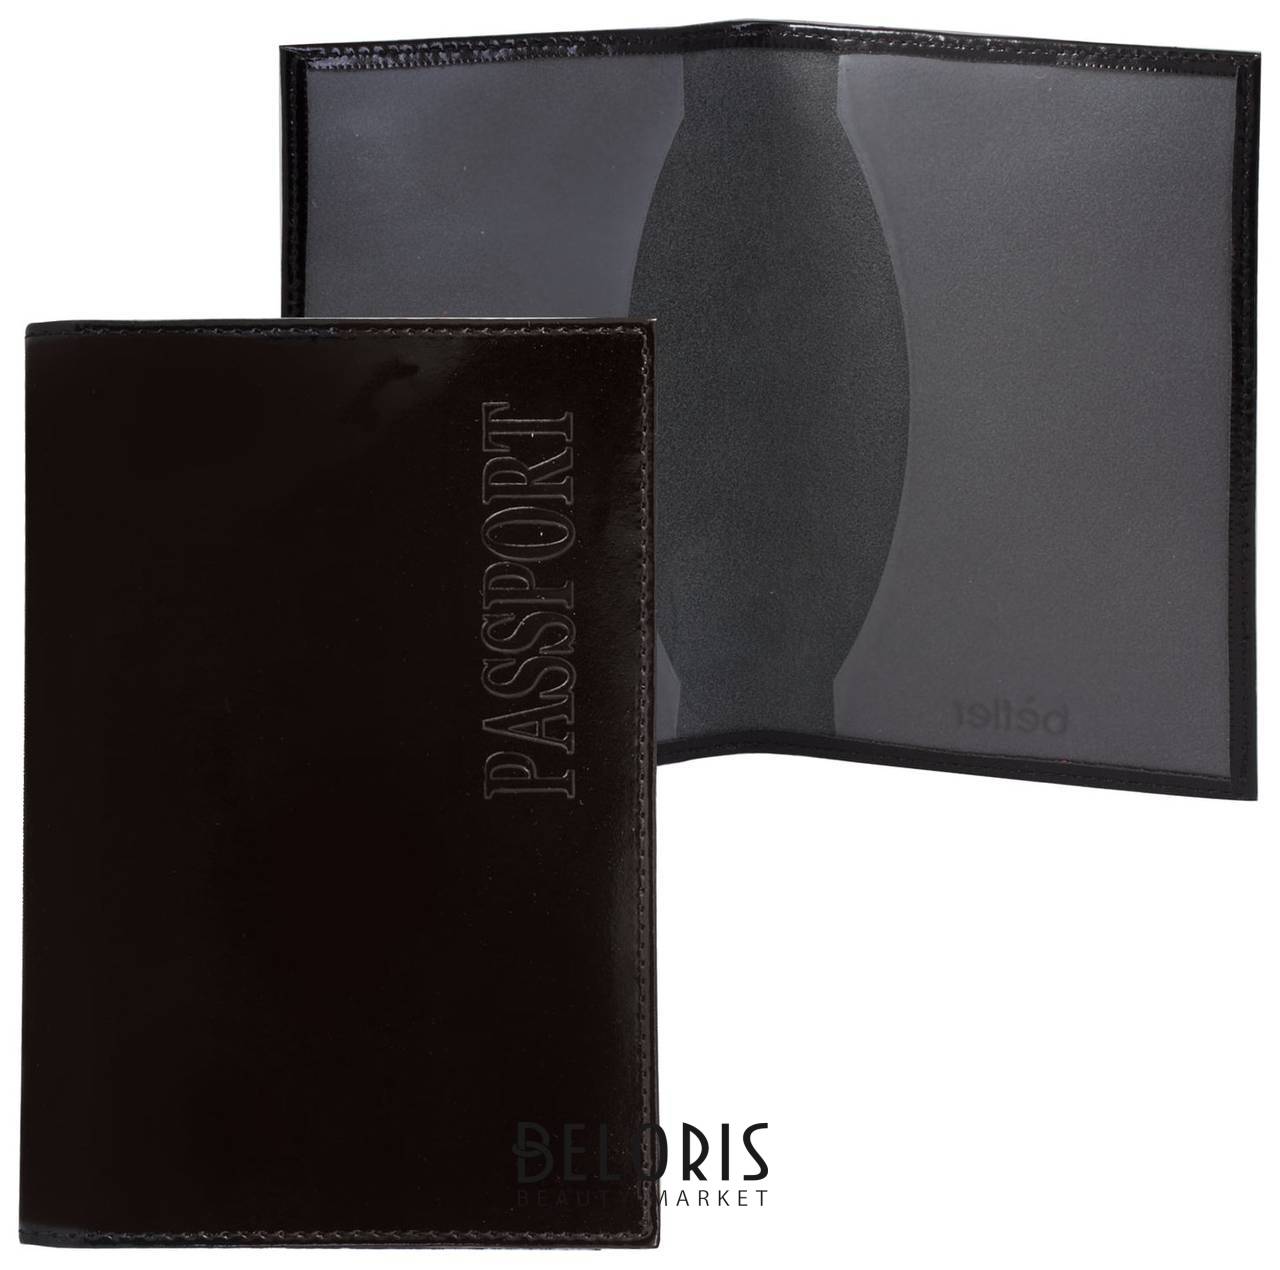 Обложка для паспорта Classic, тиснение Passport, натуральная кожа, цвет черный Befler